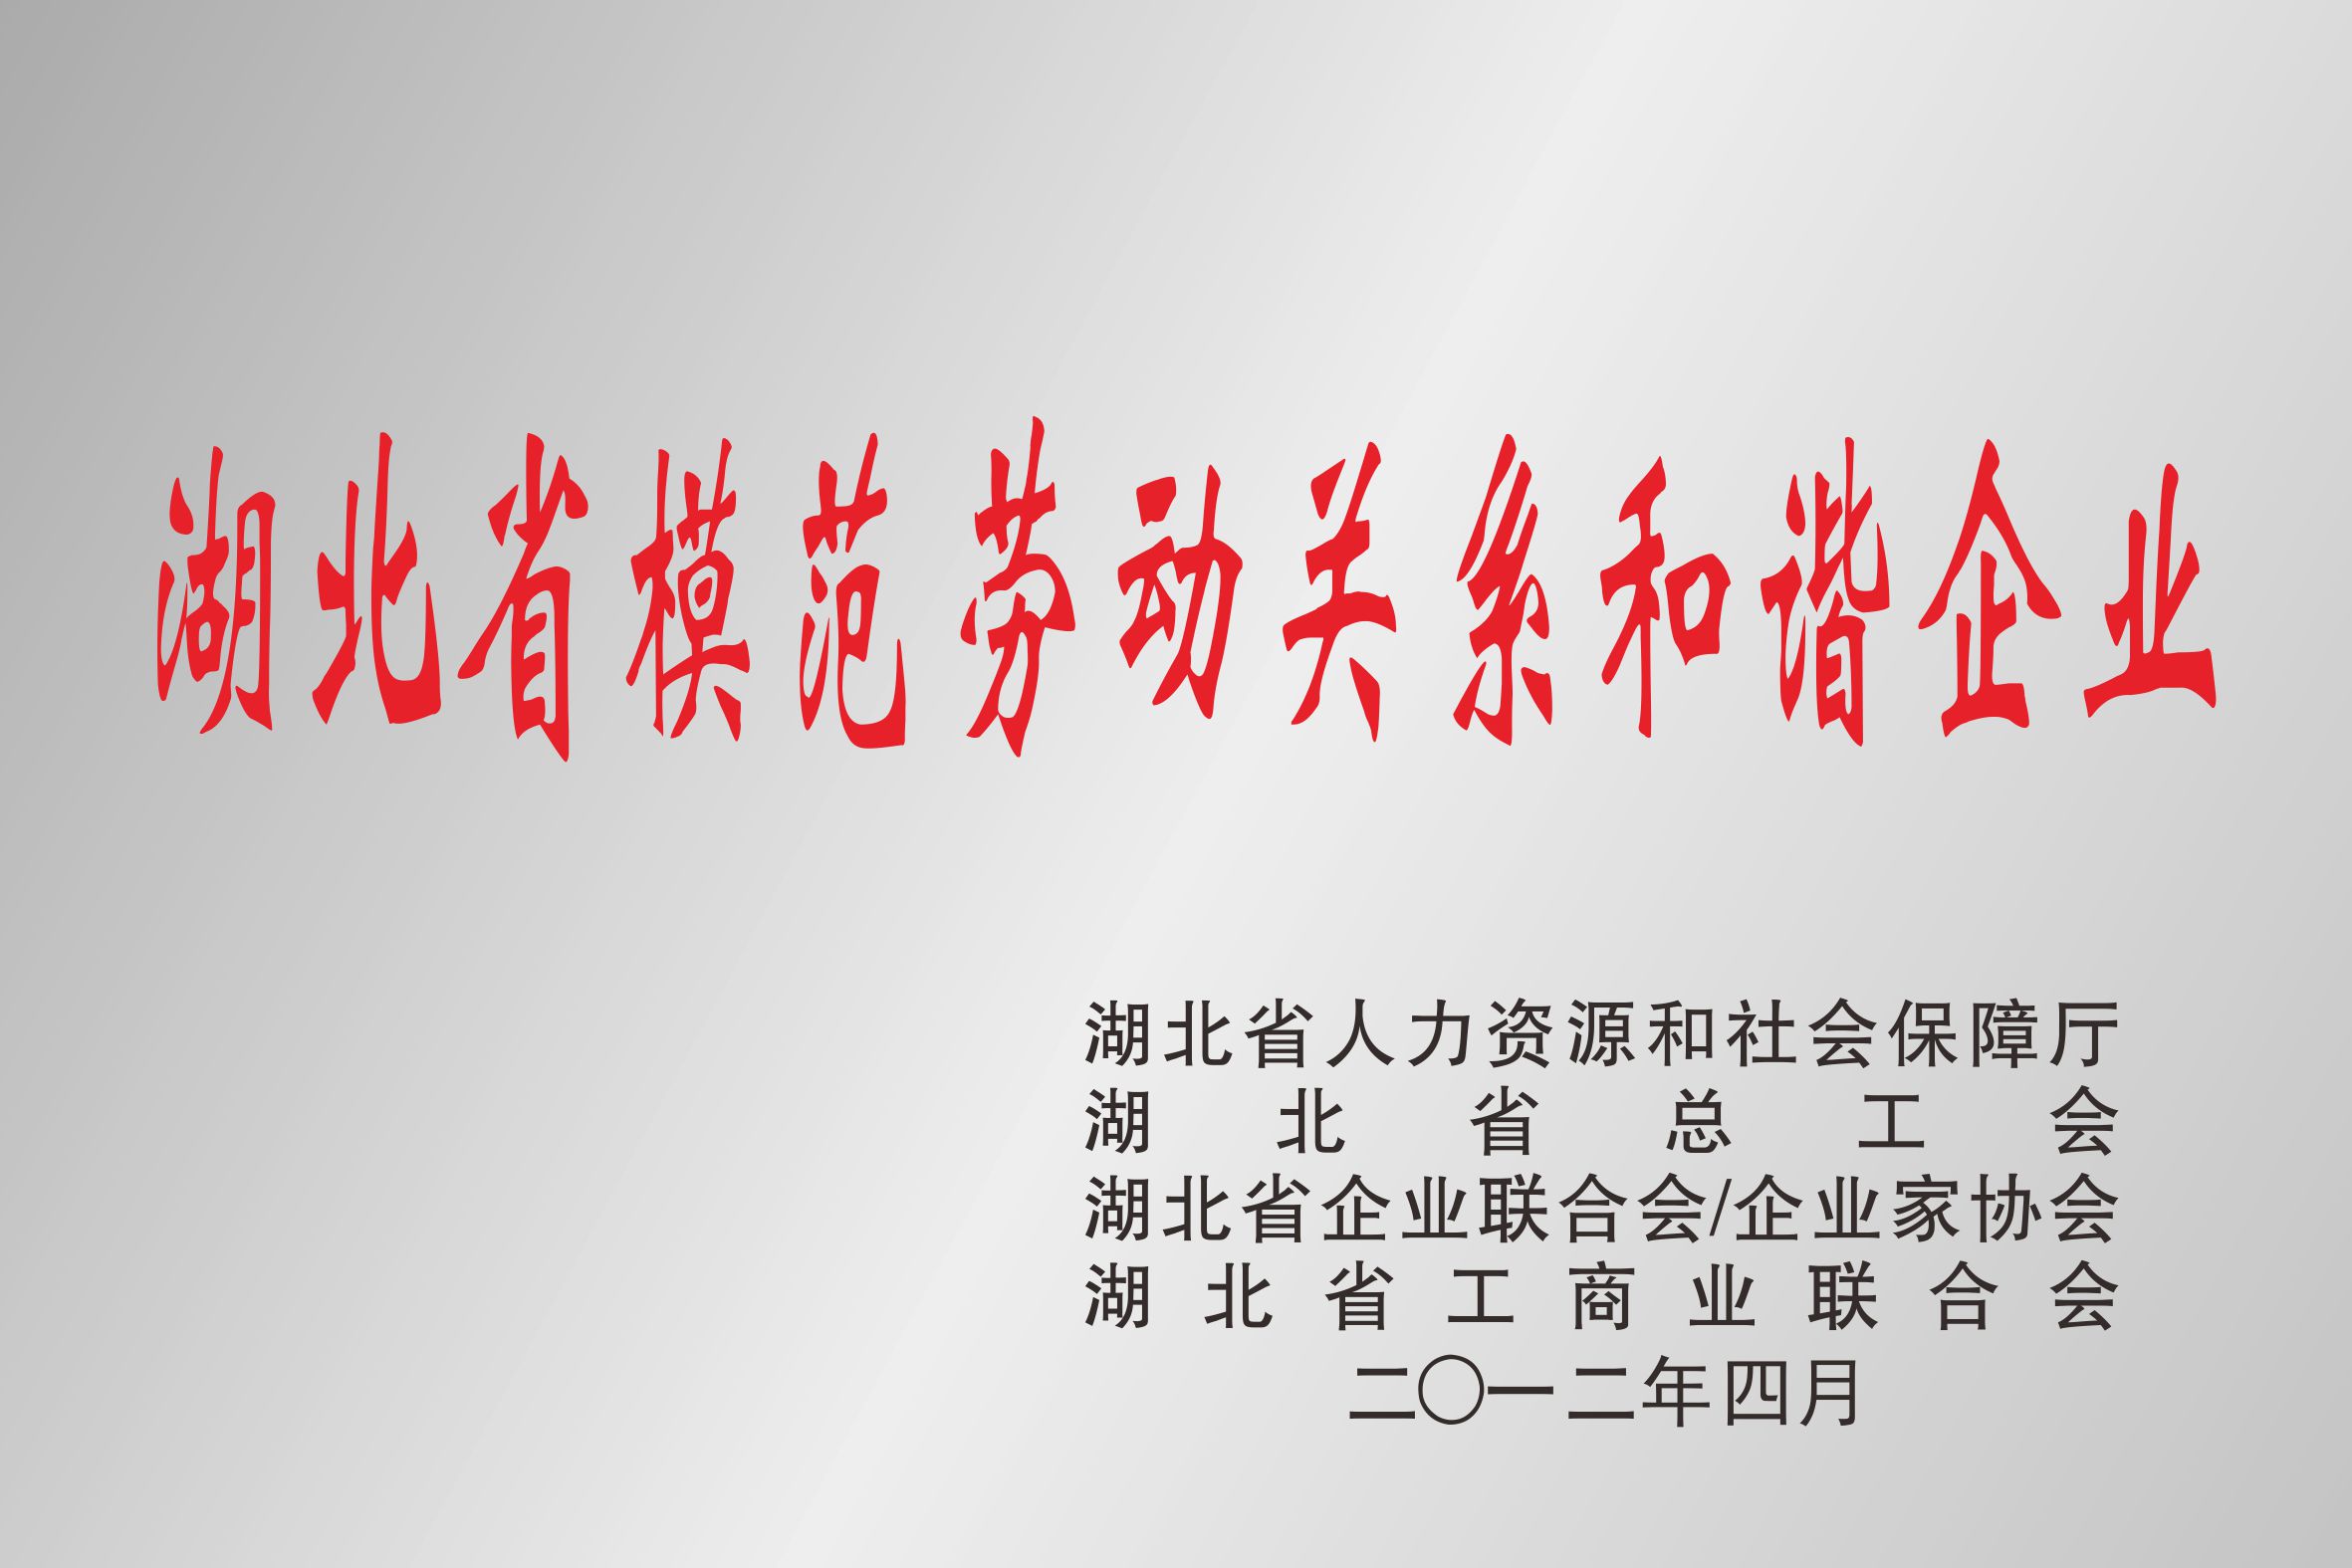 湖北省模范劳动关系和谐企业